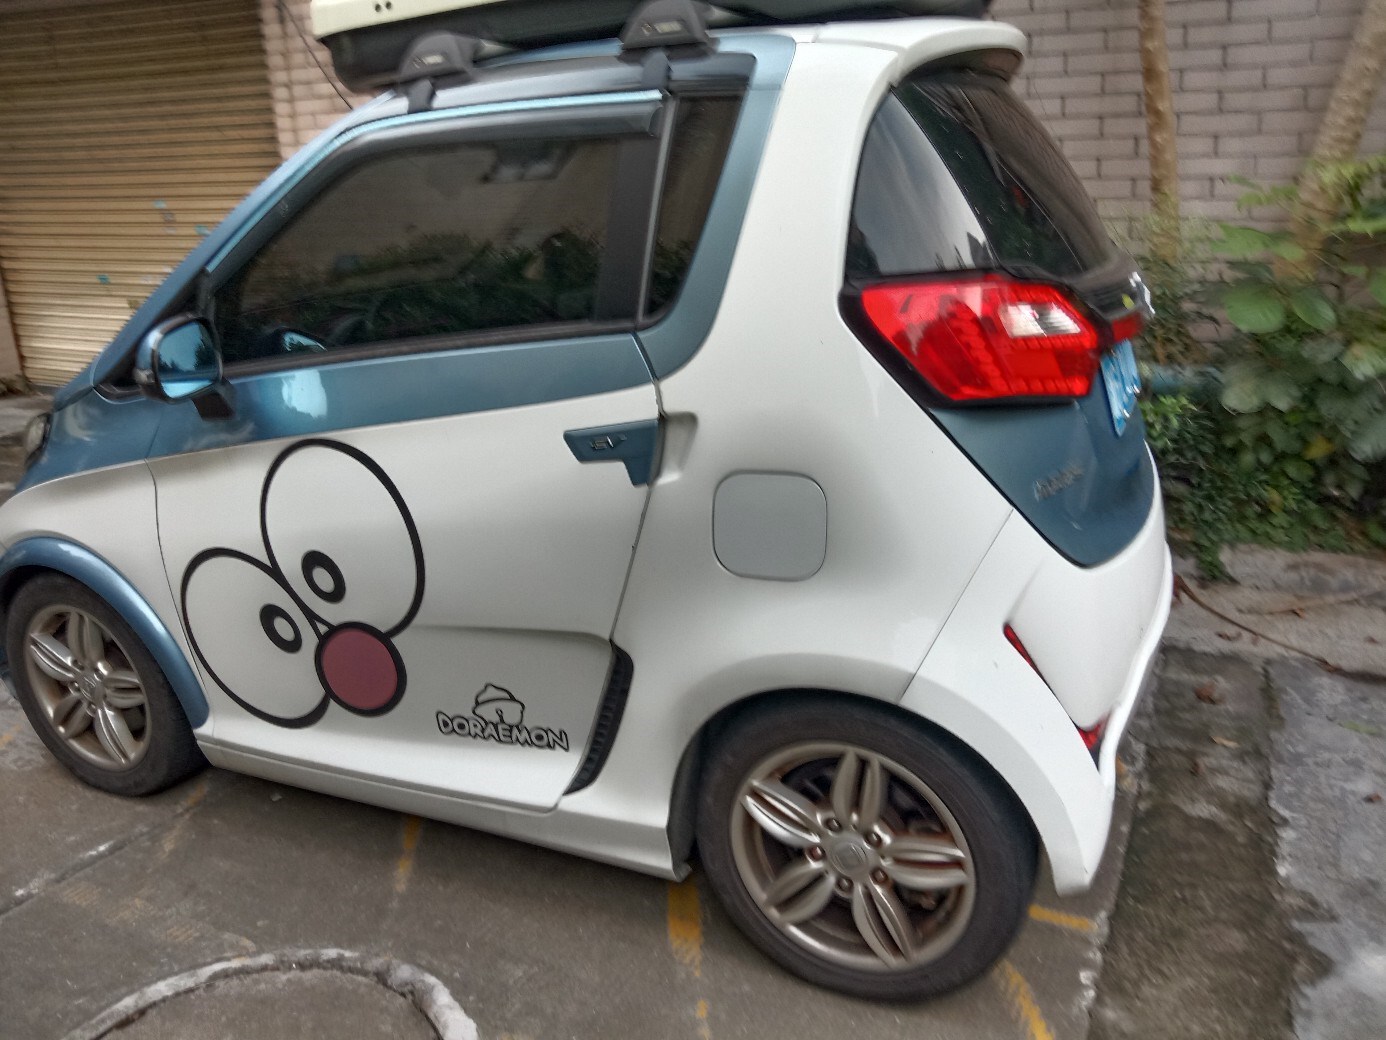 看到一辆正在充电的众泰小车,定位:广东